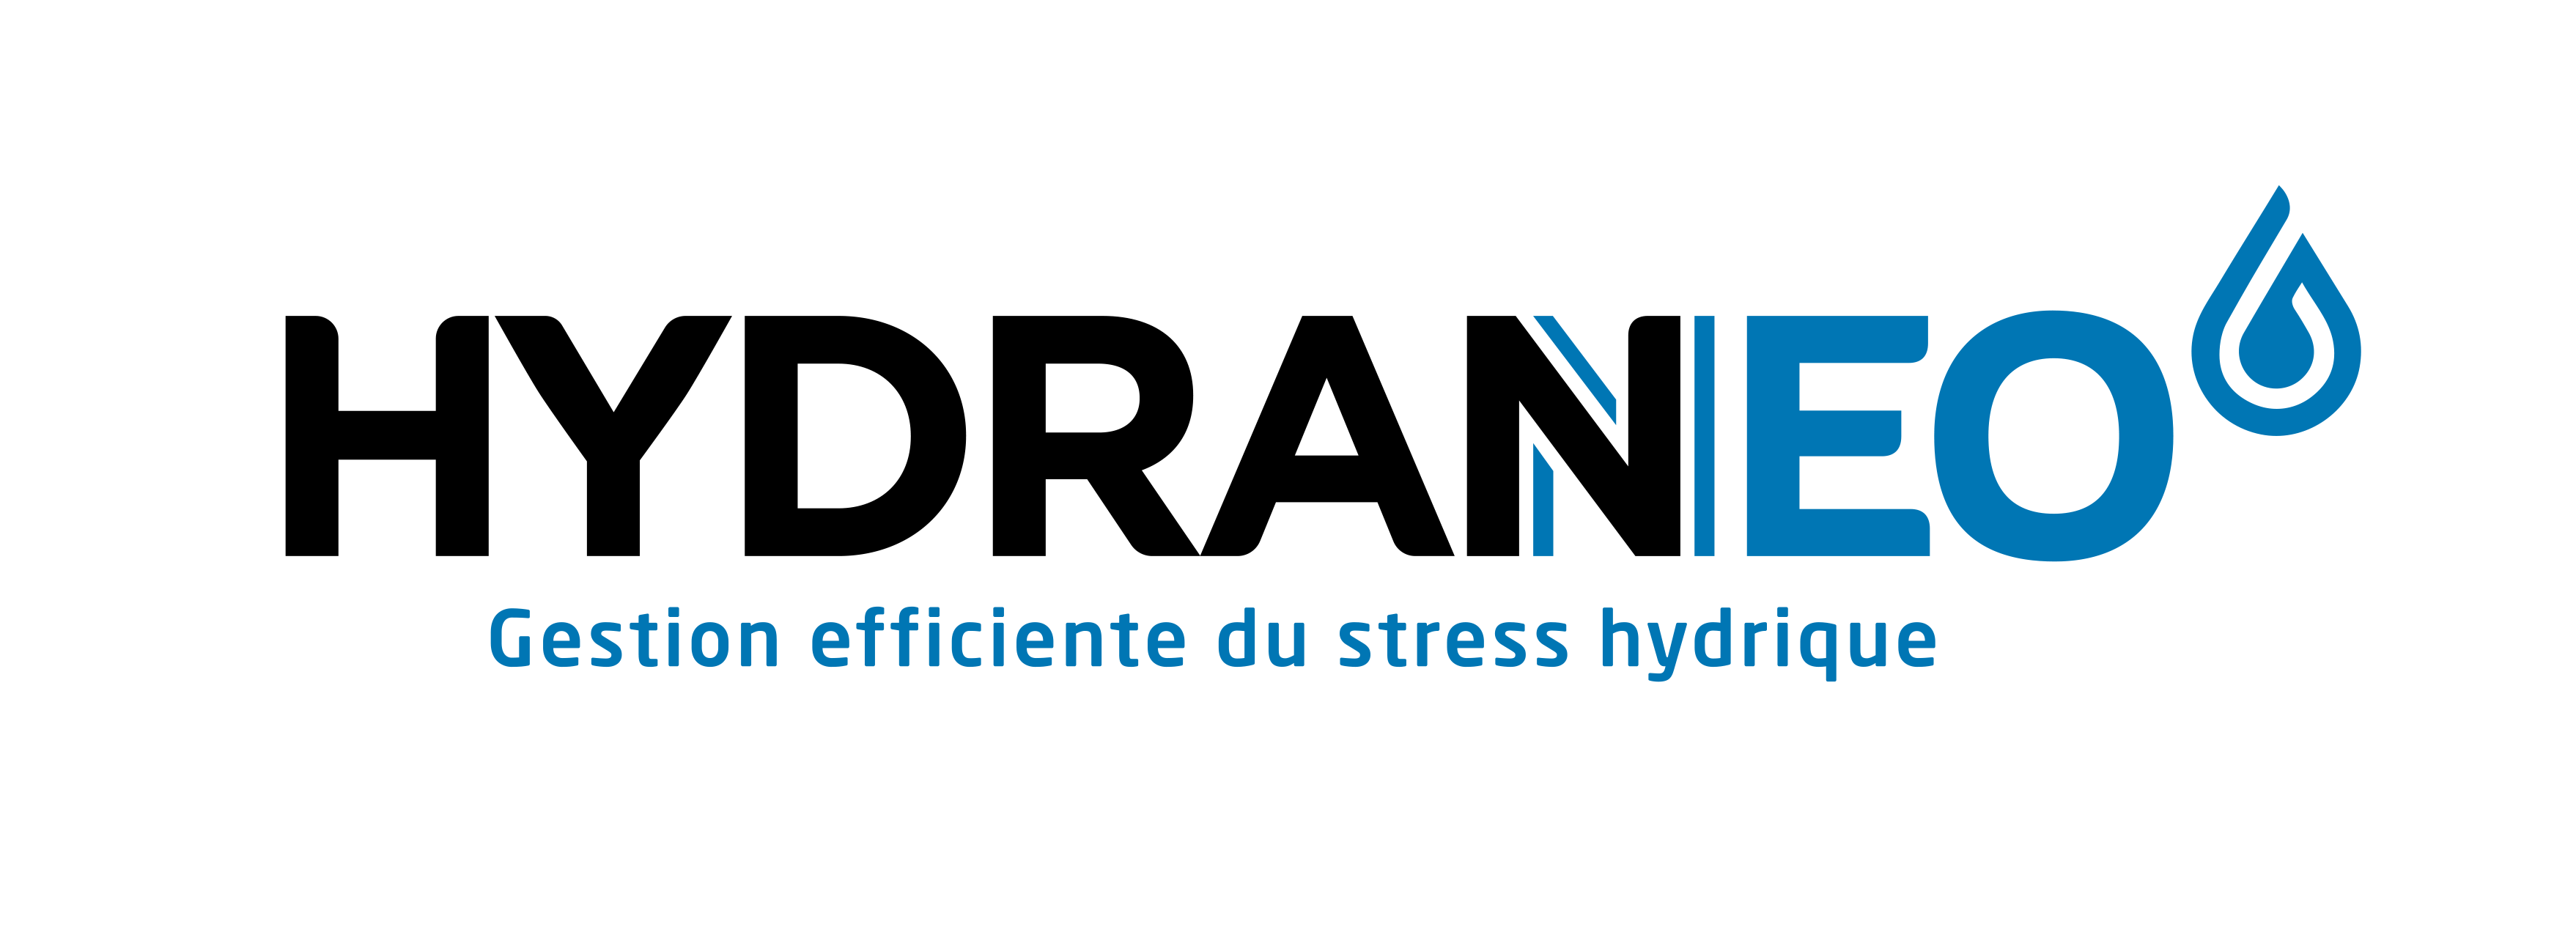 Visuel Variété HYDRANEO (gestion efficiente du stress hydrique)